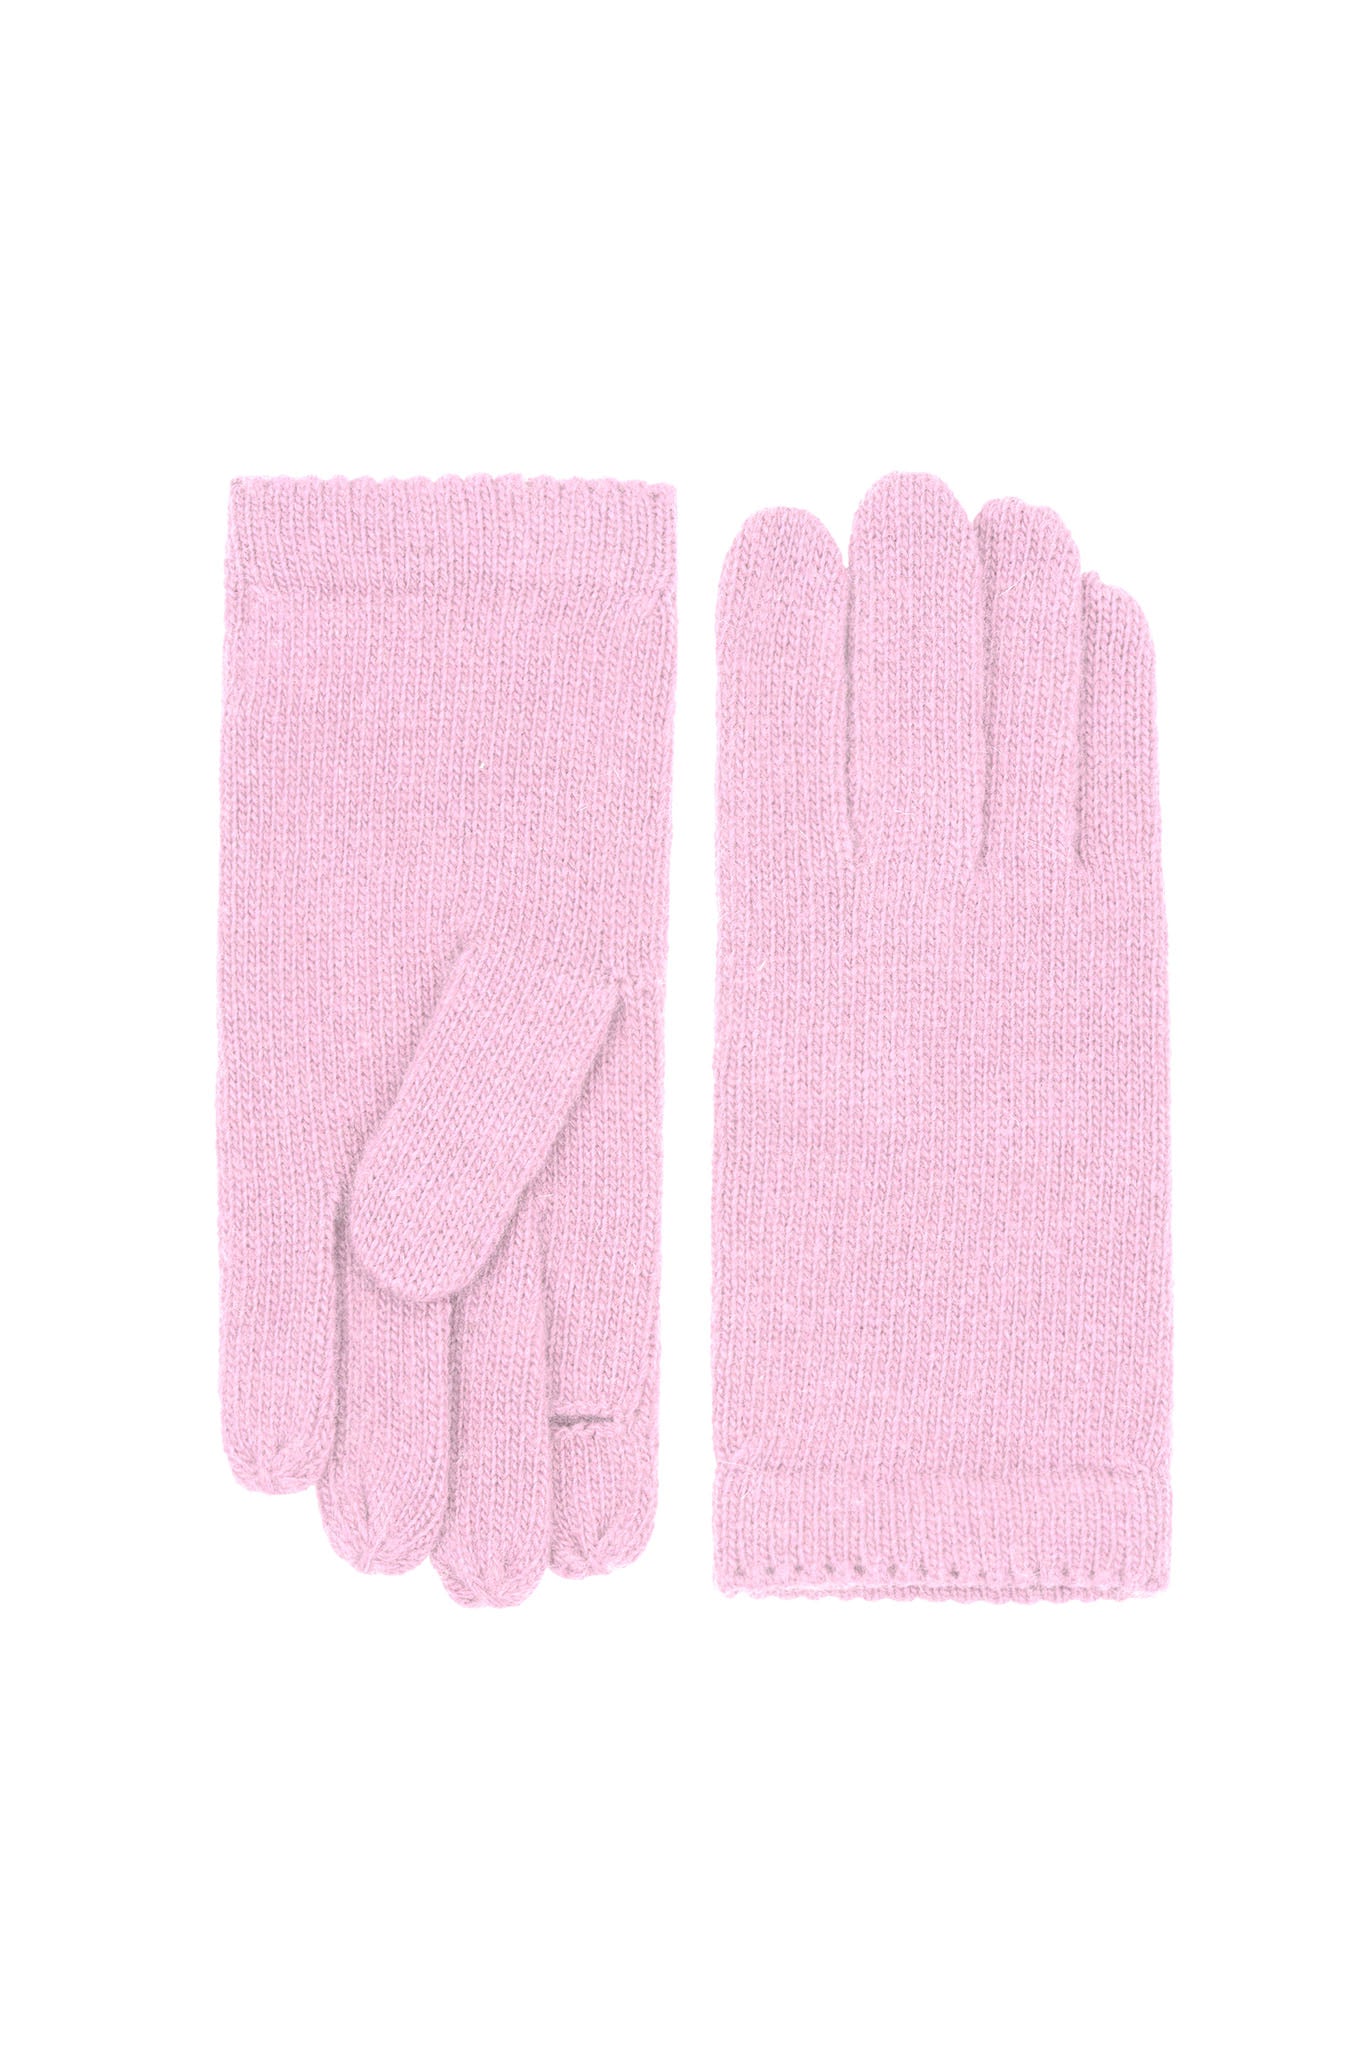 Amato Classic Knit Glove - Pink